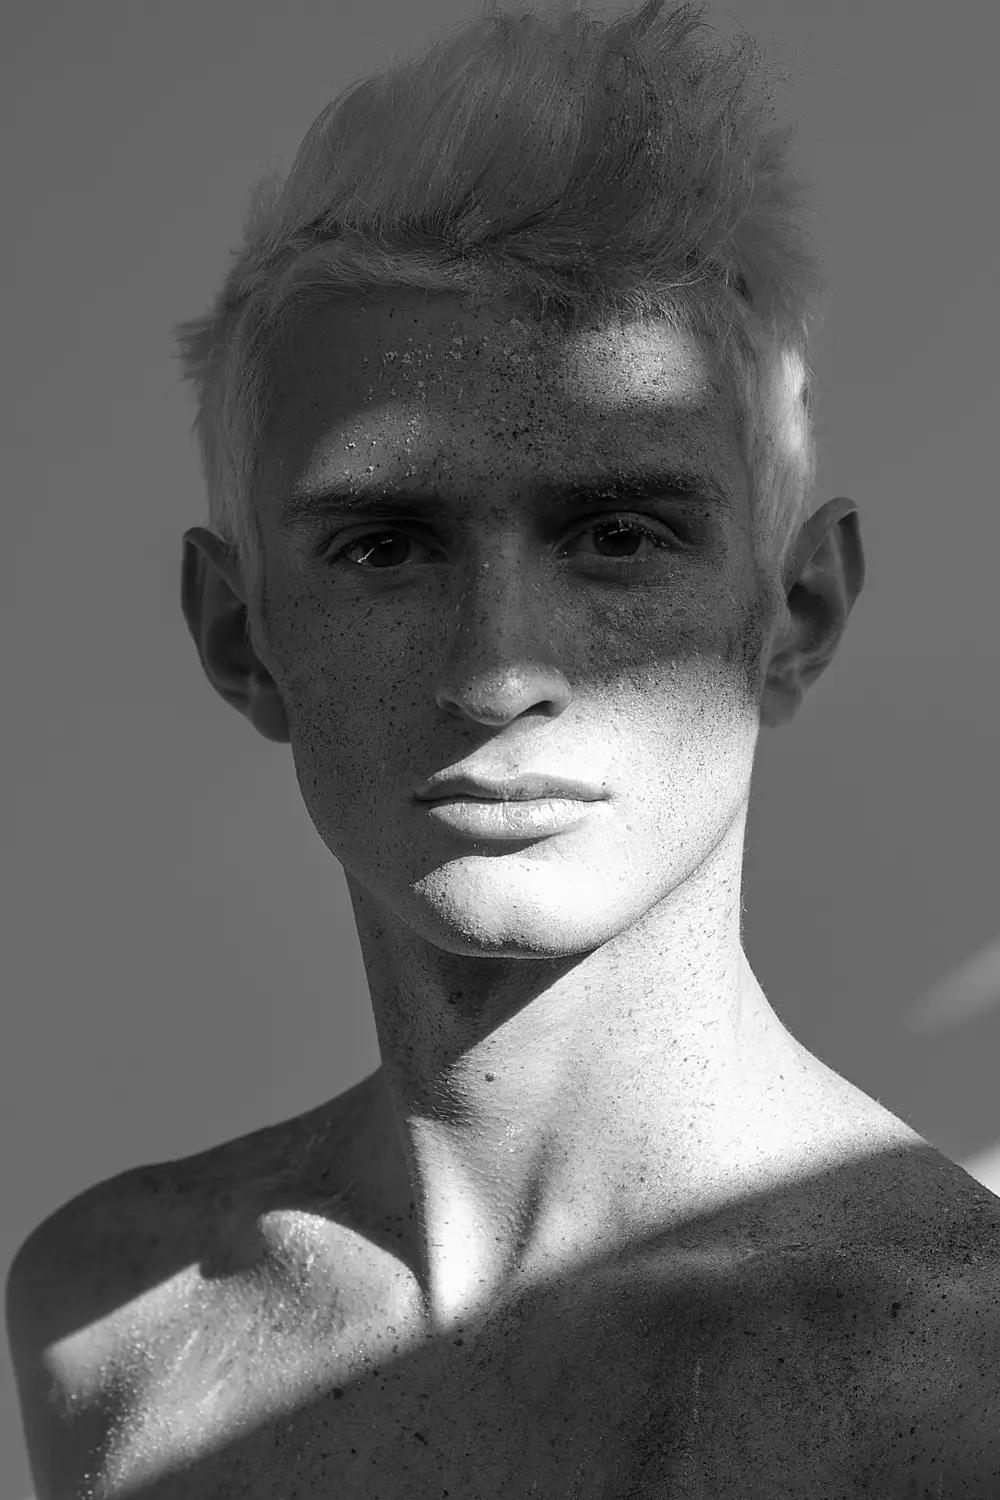 Ritratt tat-test b'wiċċ ġdid Adrian Nemi, maqtul mill-Fotografu Ċilen René de la Cruz. Make up & Hair: Tobias Sevilla